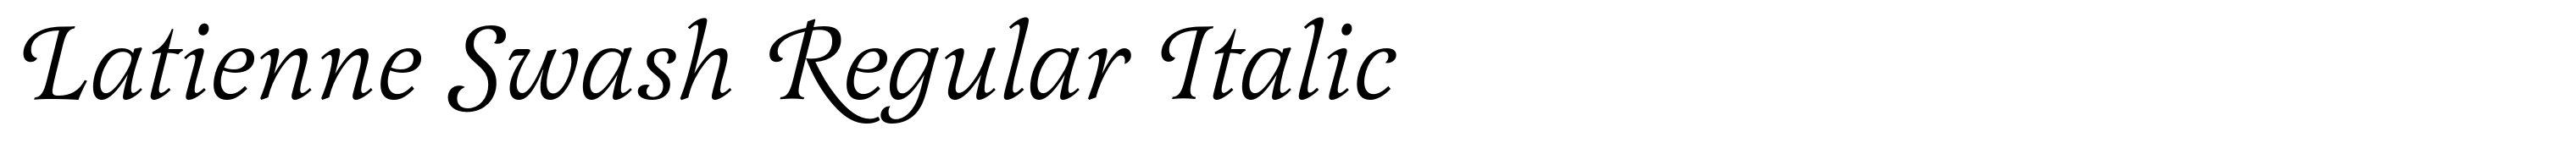 Latienne Swash Regular Italic